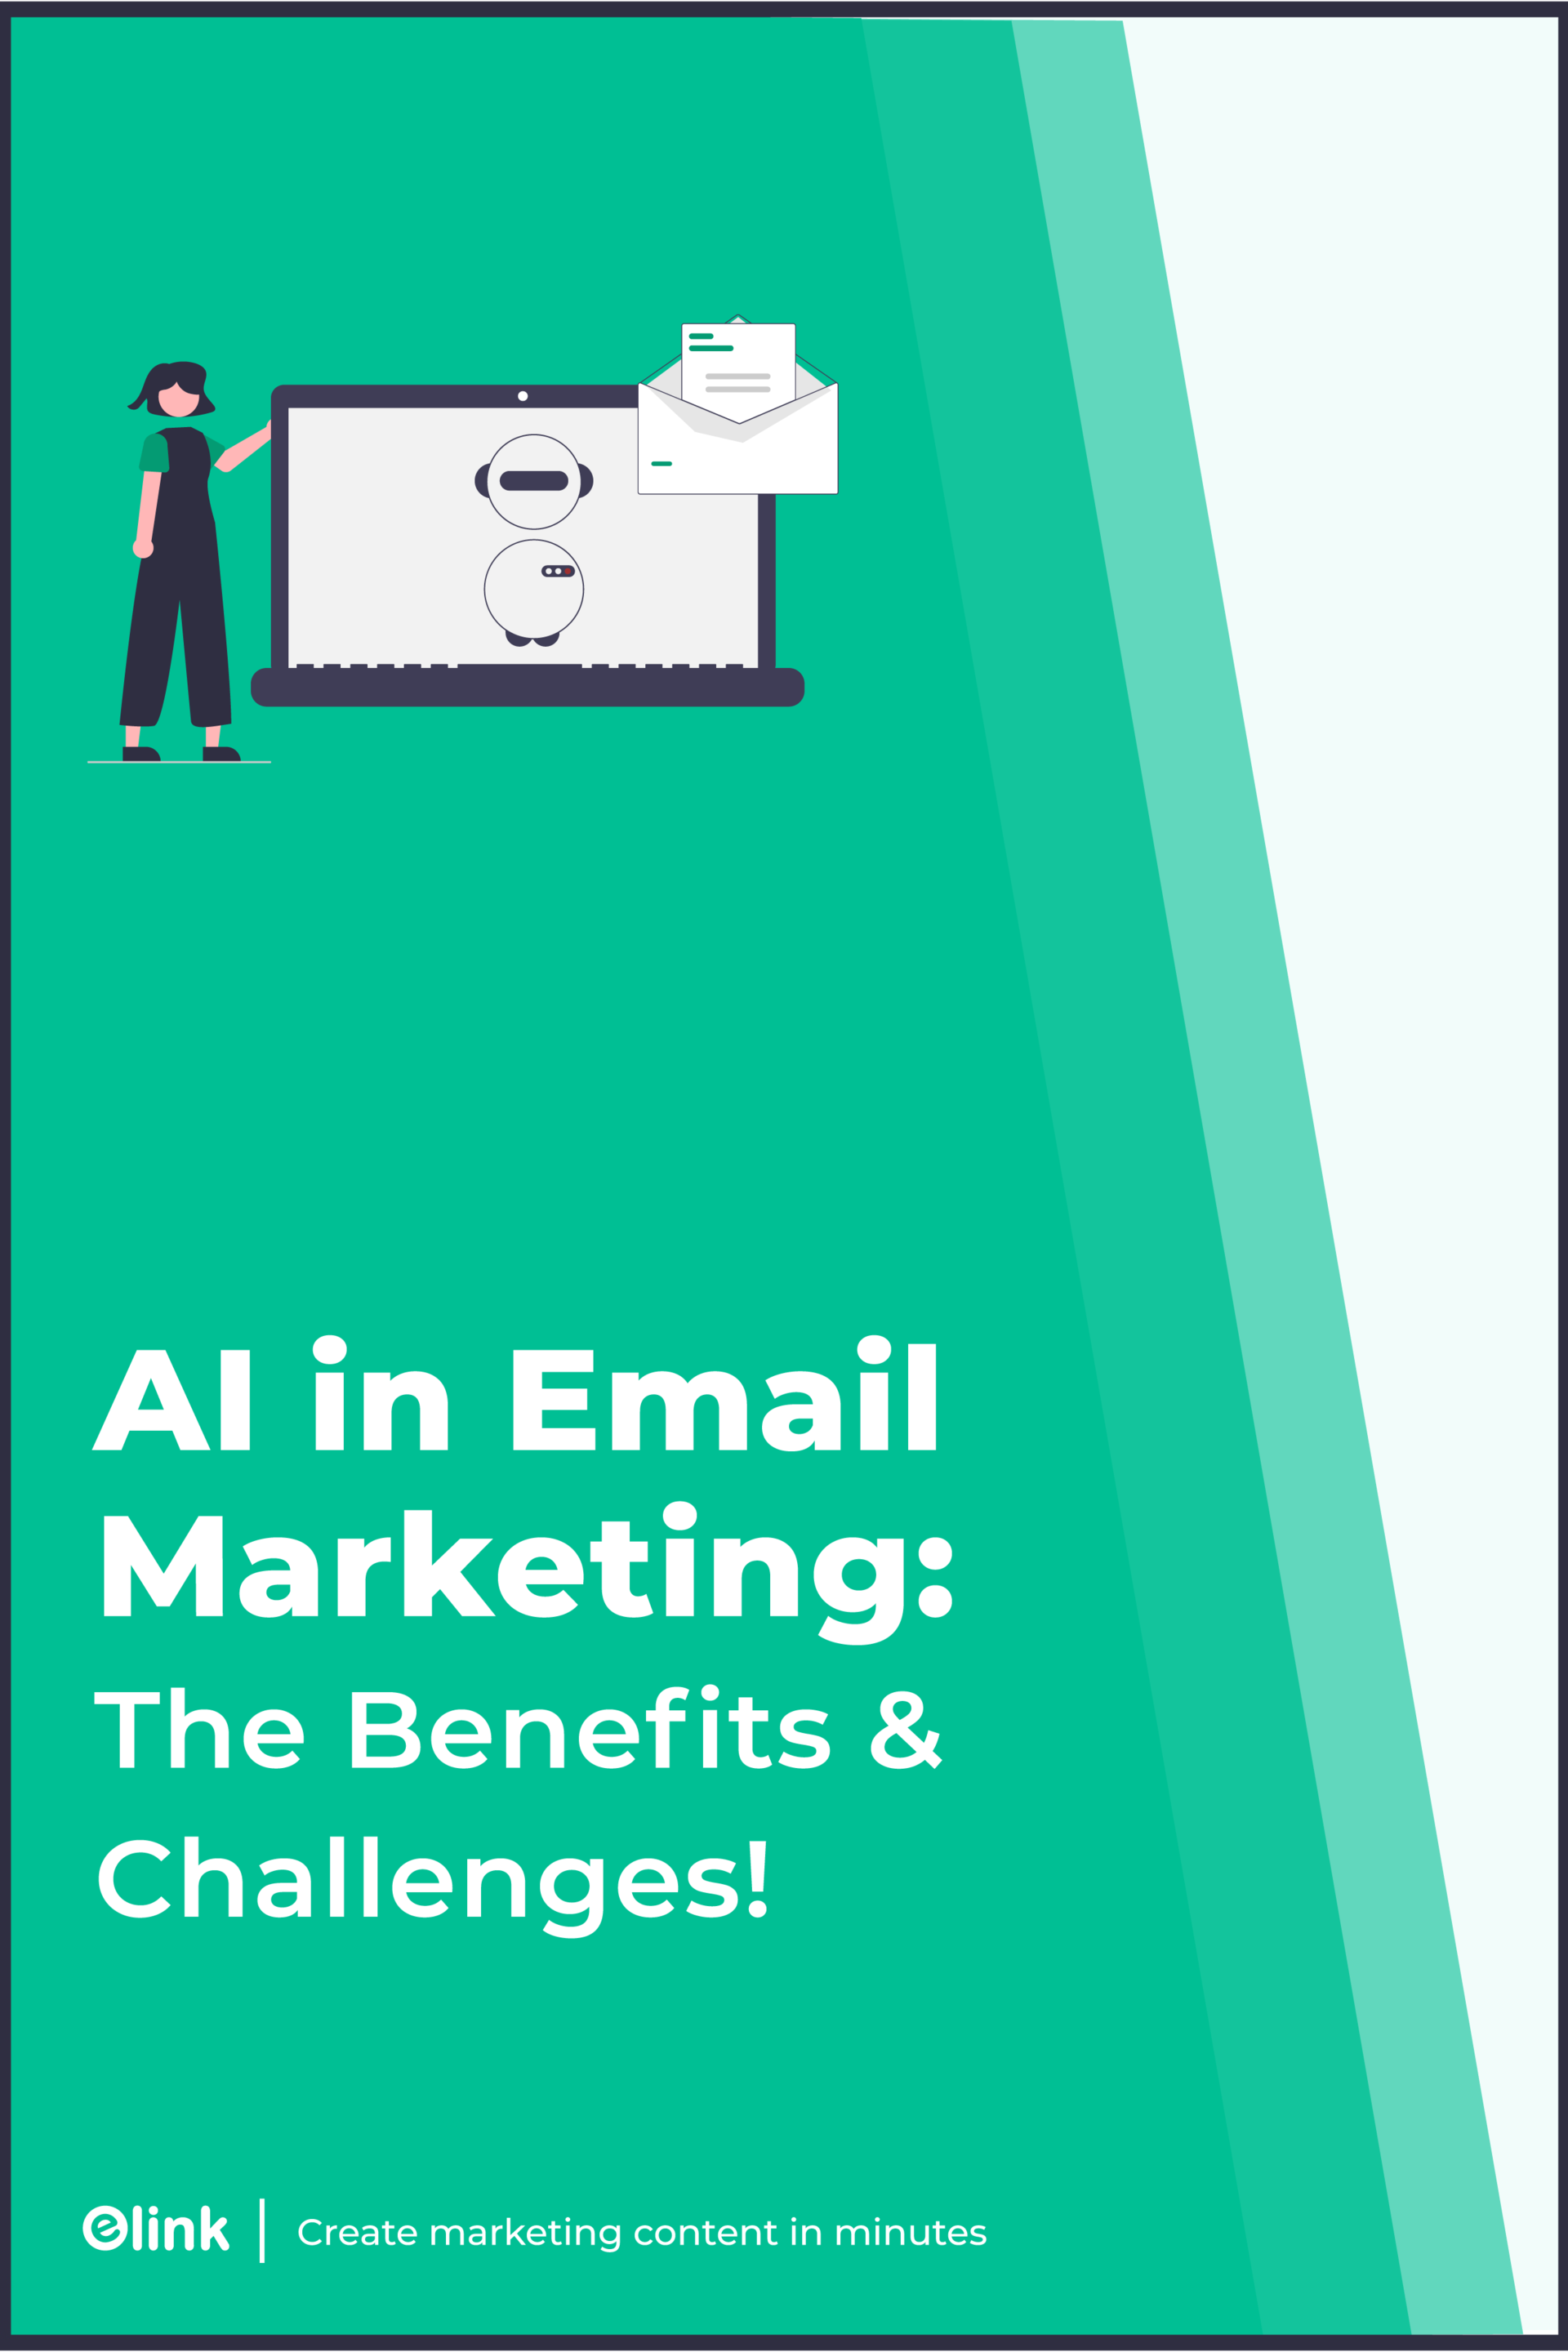 الذكاء الاصطناعي في لافتة بينتيريست للتسويق عبر البريد الإلكتروني